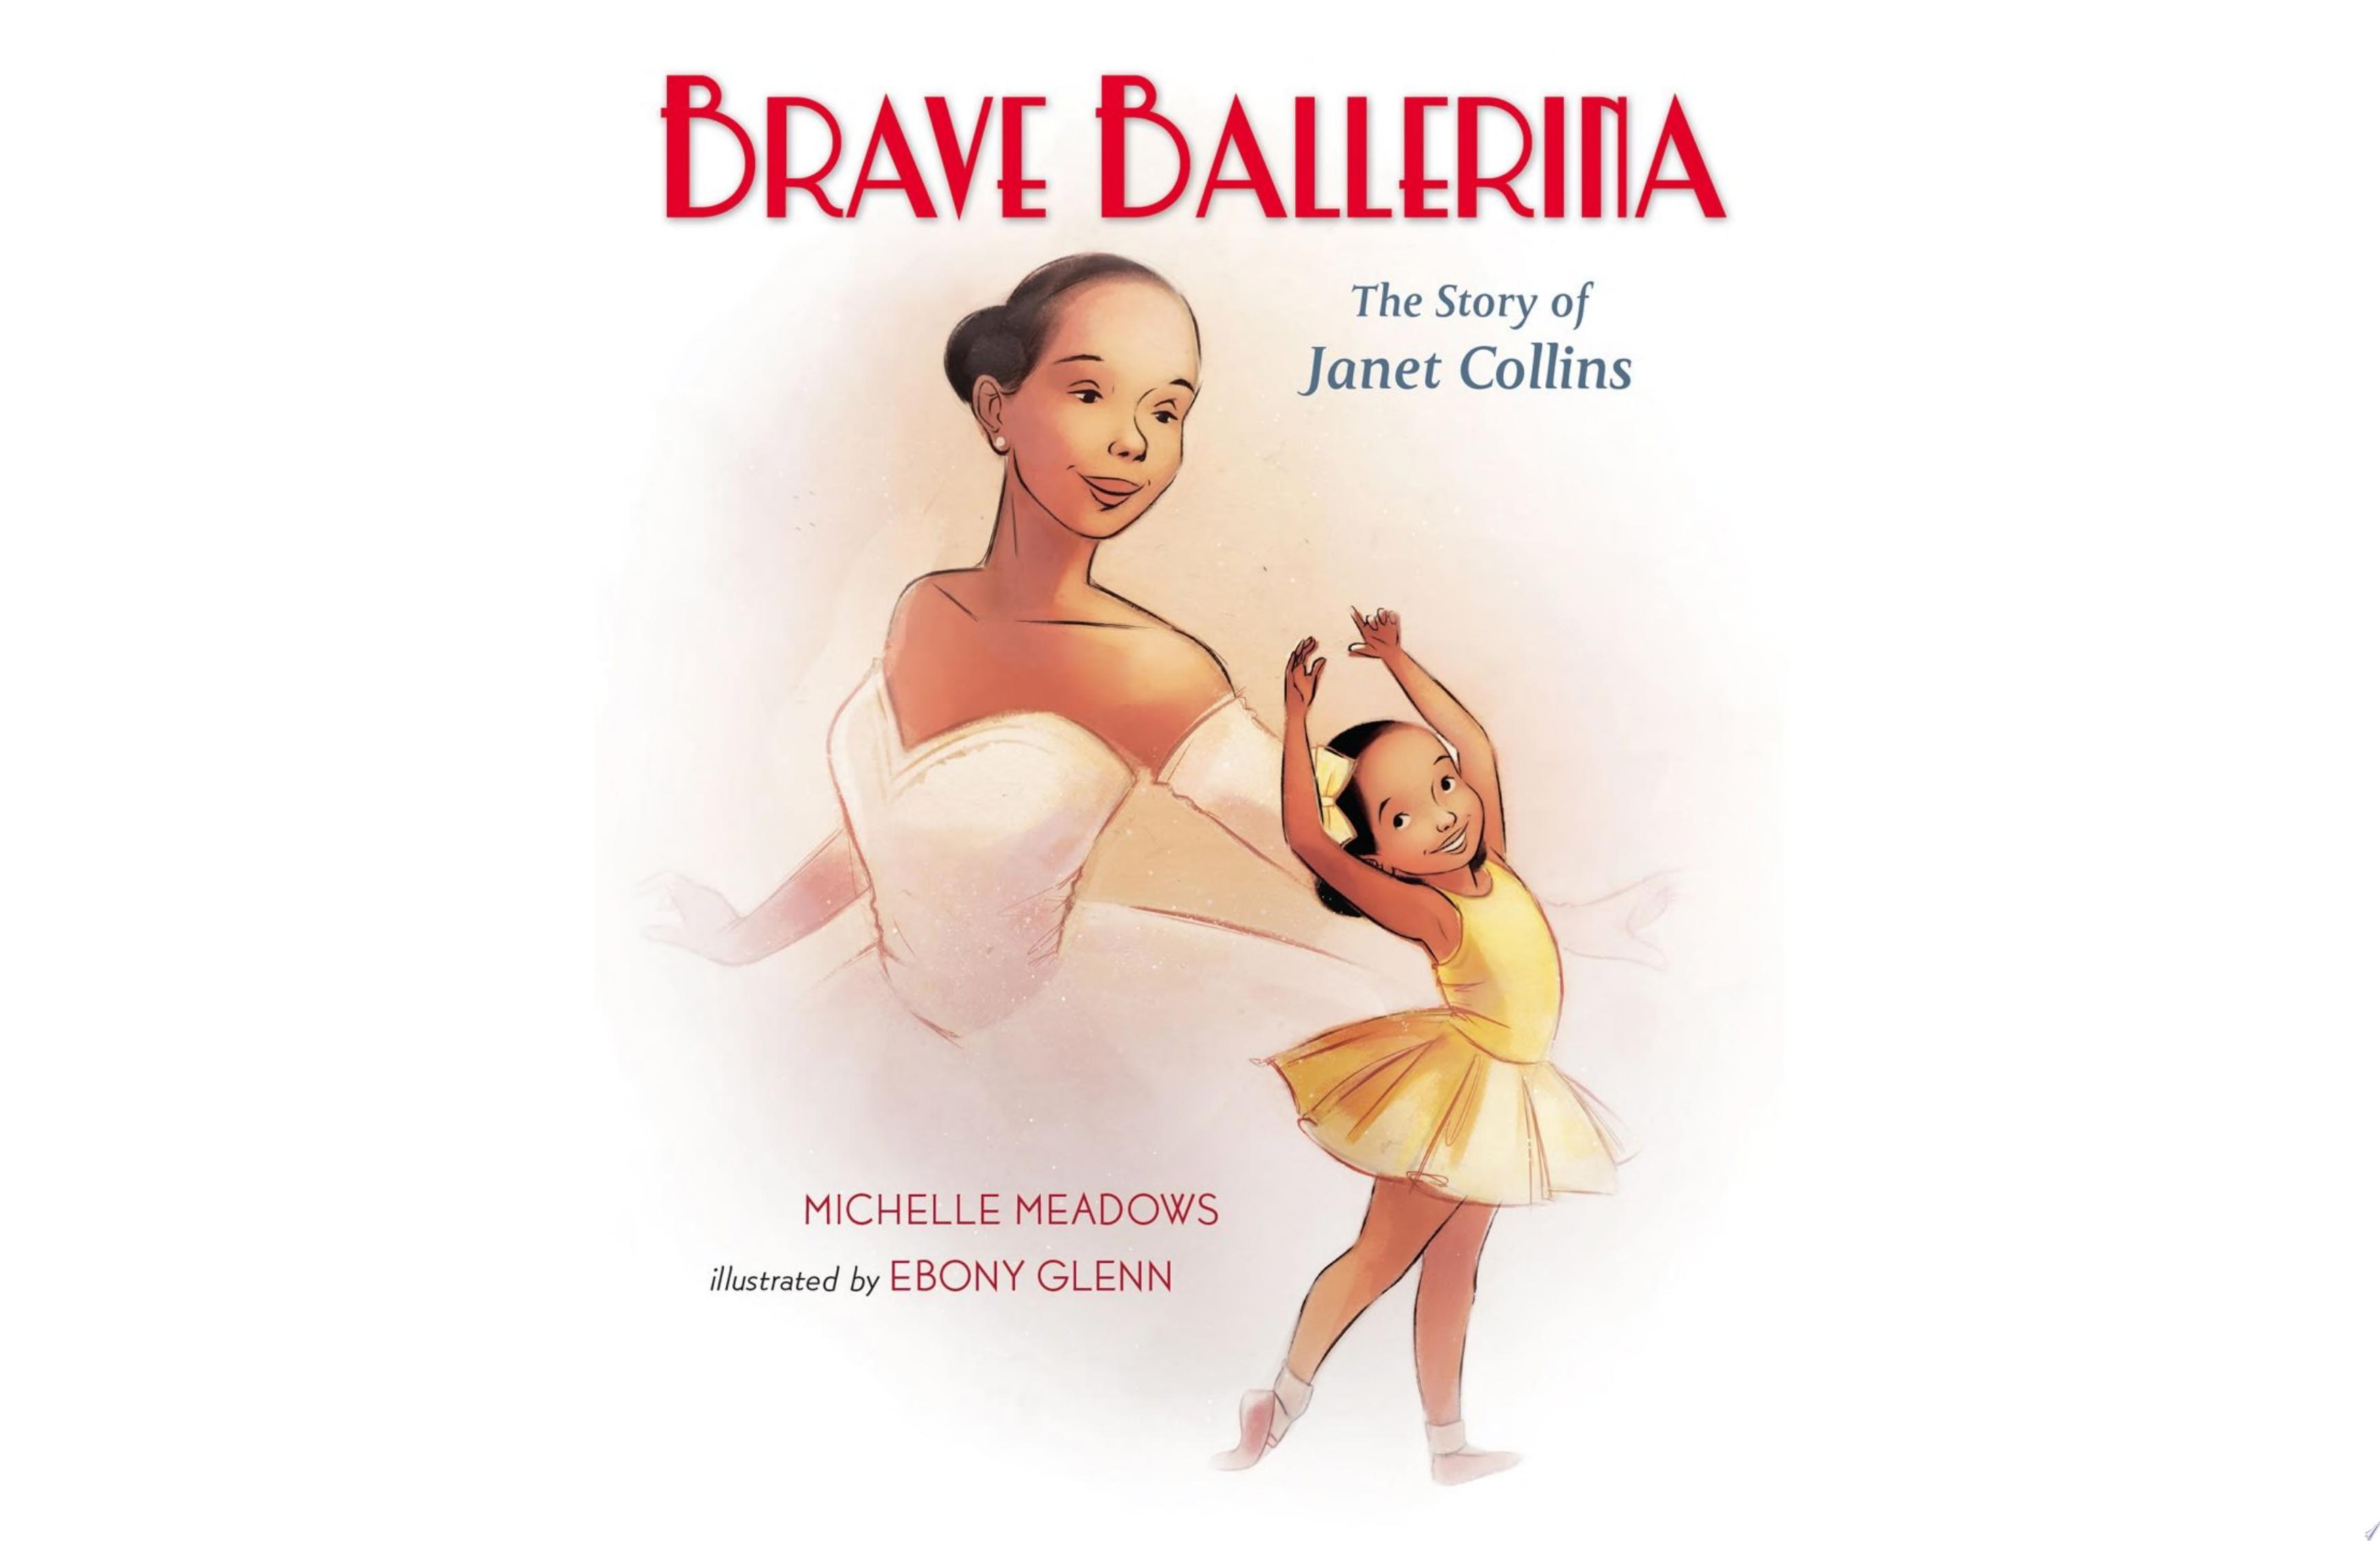 Image for "Brave Ballerina"